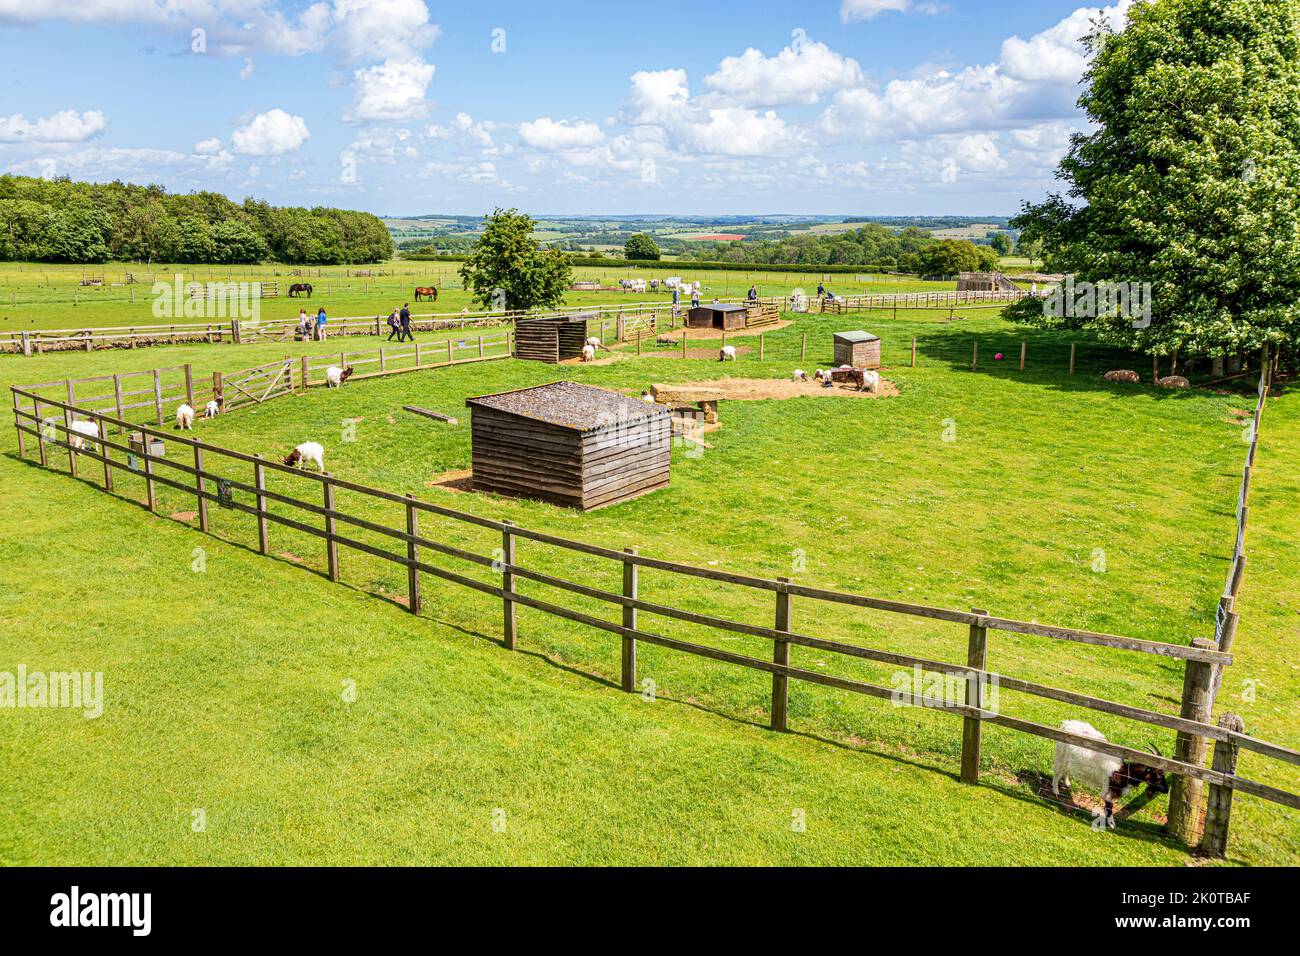 La vue sur les Cotswolds de 1000 pieds sur la plate-forme d'observation de Cotswold Farm Park, Kineton, Gloucestershire Royaume-Uni Banque D'Images